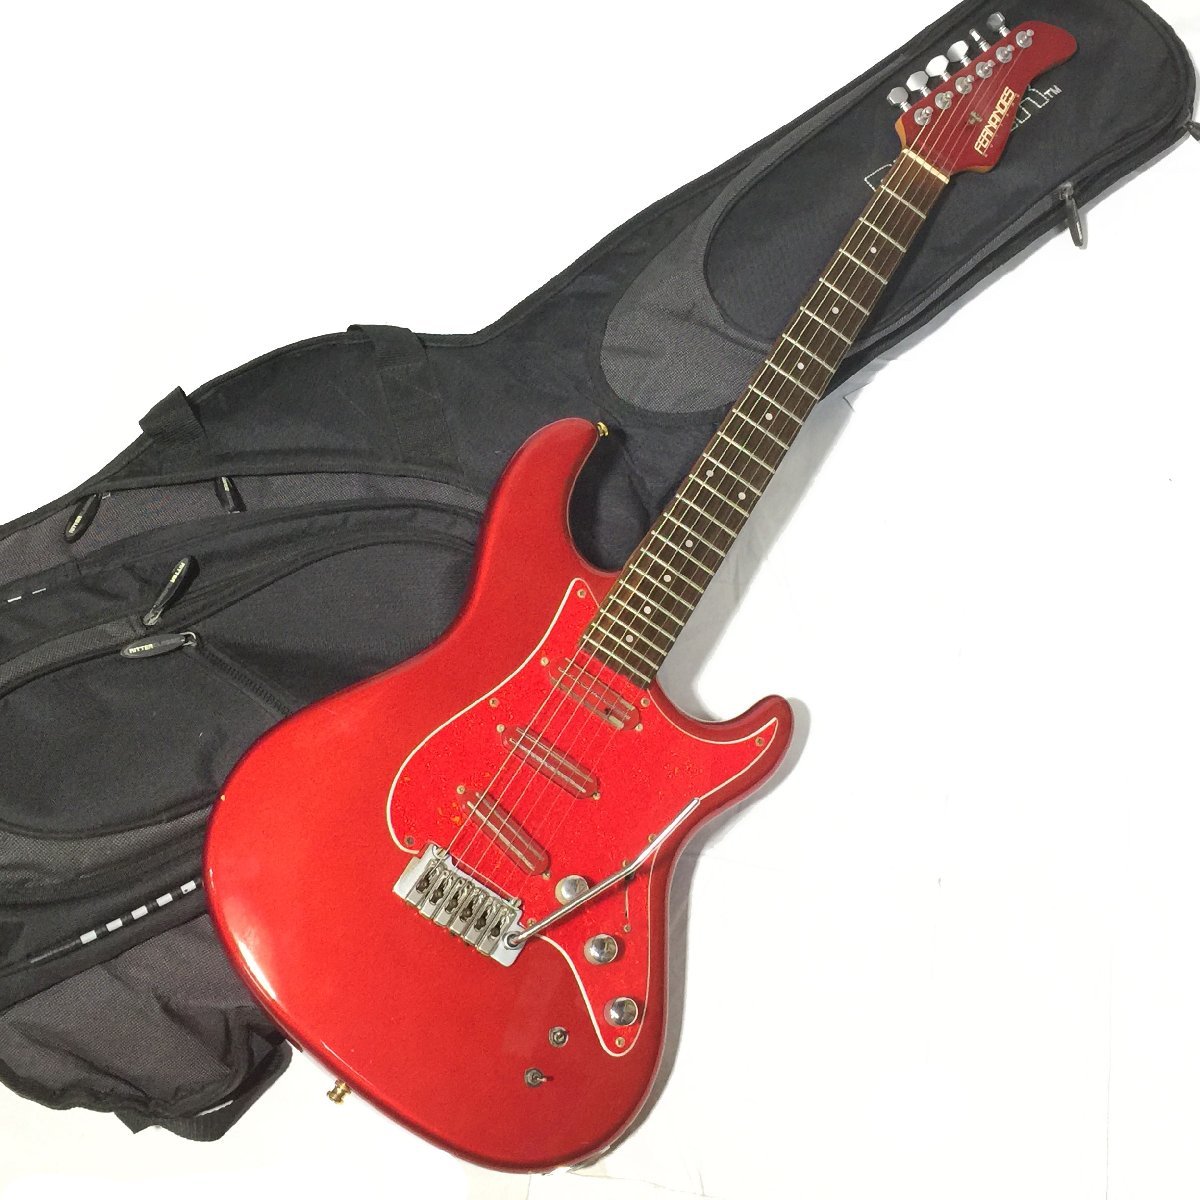 Fernandes ARS-850S (ピックアップ:サスティナー搭載)(ブリッジ:GOTOH製ウィルキンソンVS100 トレモロアーム付き)  エレキギター